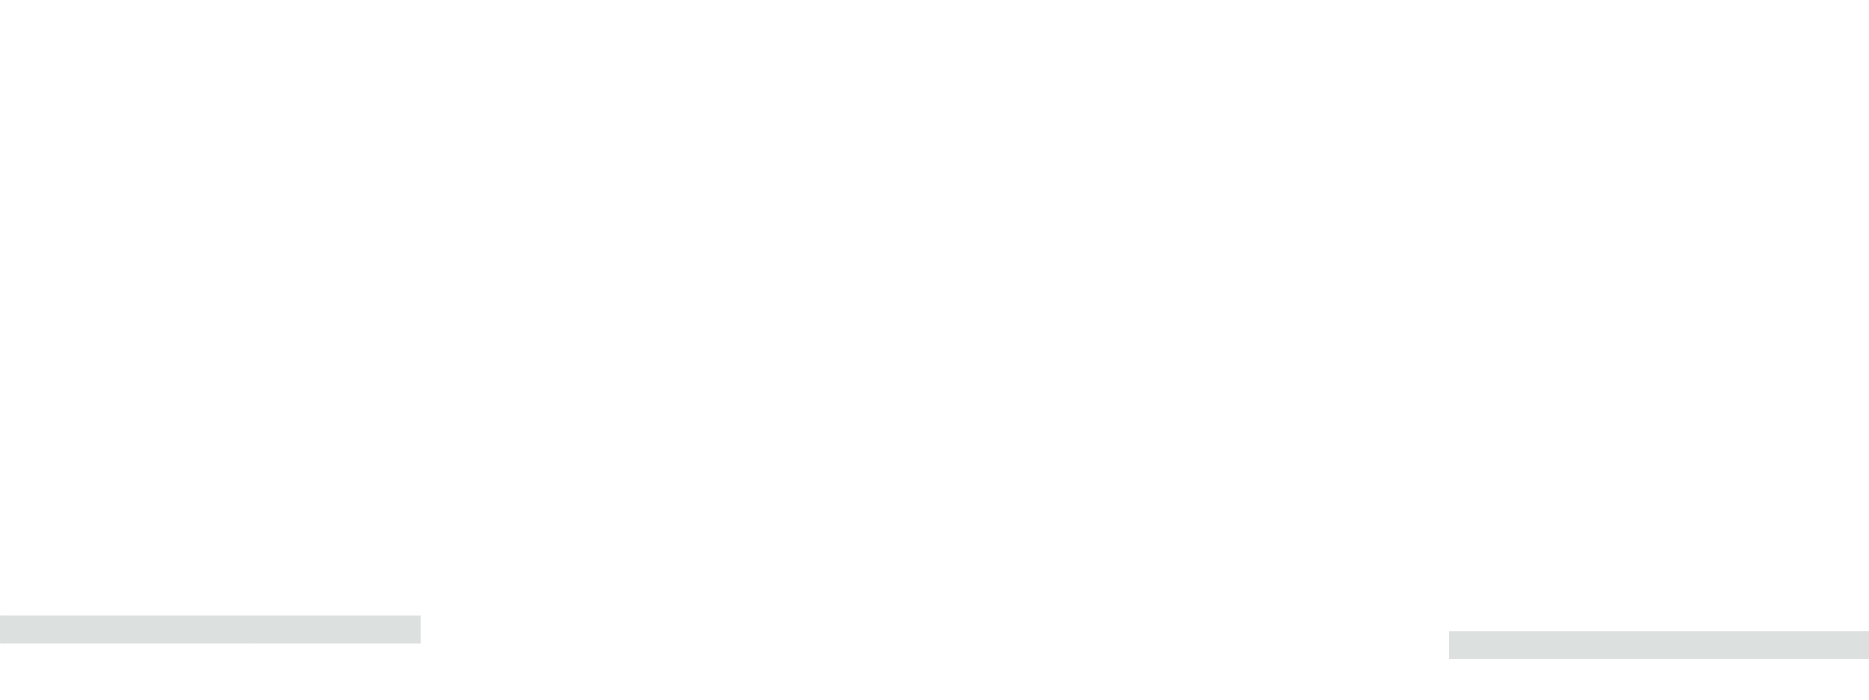 Oakz Media Logo_White_Small